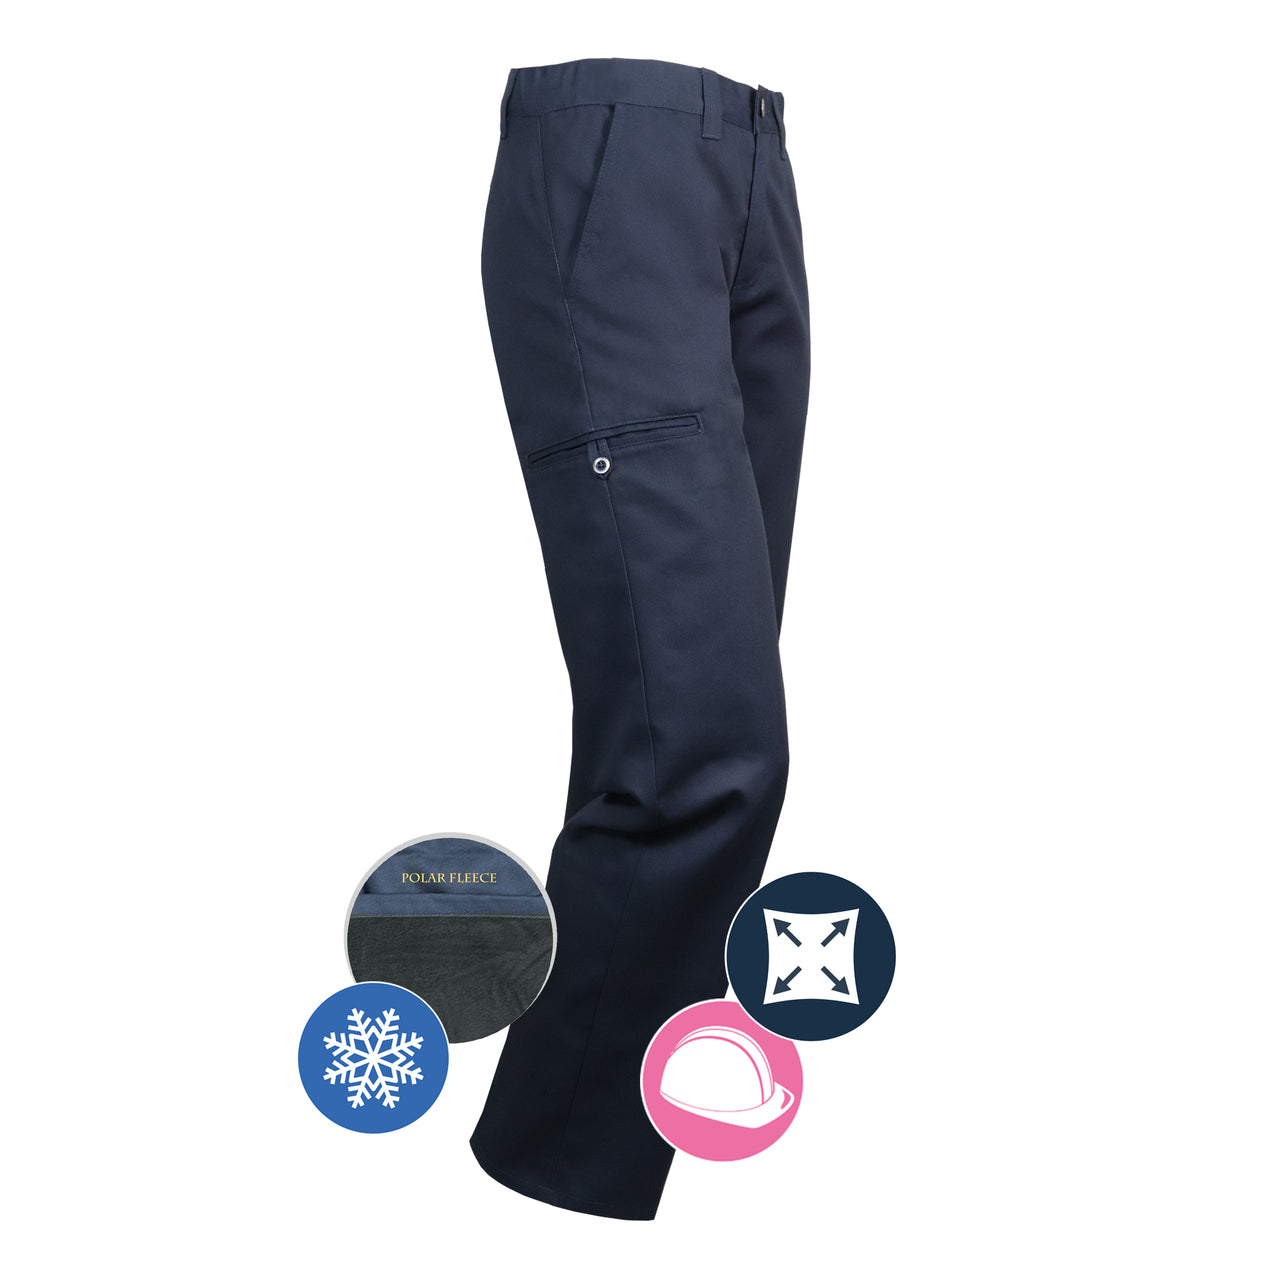 773EXD - Pantalon de travail doublé extensible pour femme||773EXD - Lined Stretch ladie's work pant